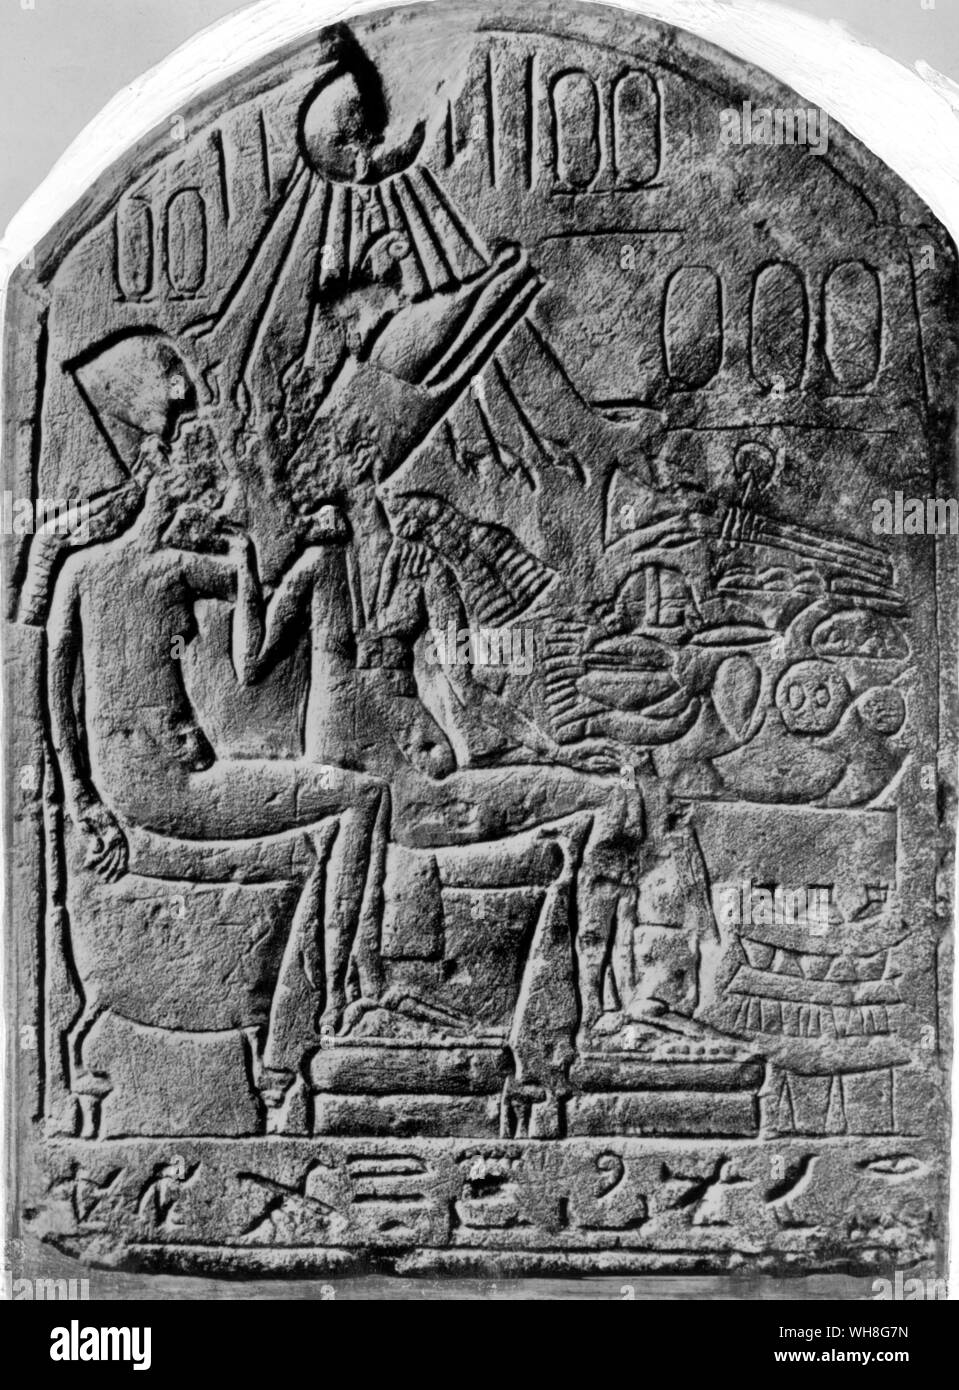 Eine unvollendete Amarnan Stele wahrscheinlich mit der Darstellung der zwei coregents Echnaton und Smenkhkare. Kalkstein. Smenkhkare (manchmal buchstabiert und Smenkhare Smenkare. Bedeutung stark ist die Seele von Ra) war ein Pharao der achtzehnten Dynastie, Nachfolger der Ketzer Echnaton, und Vorgänger von Tut-ench-Amun. . Von Christiane Desroches Noblecourt, Seite 167 Tutanchamun. Stockfoto